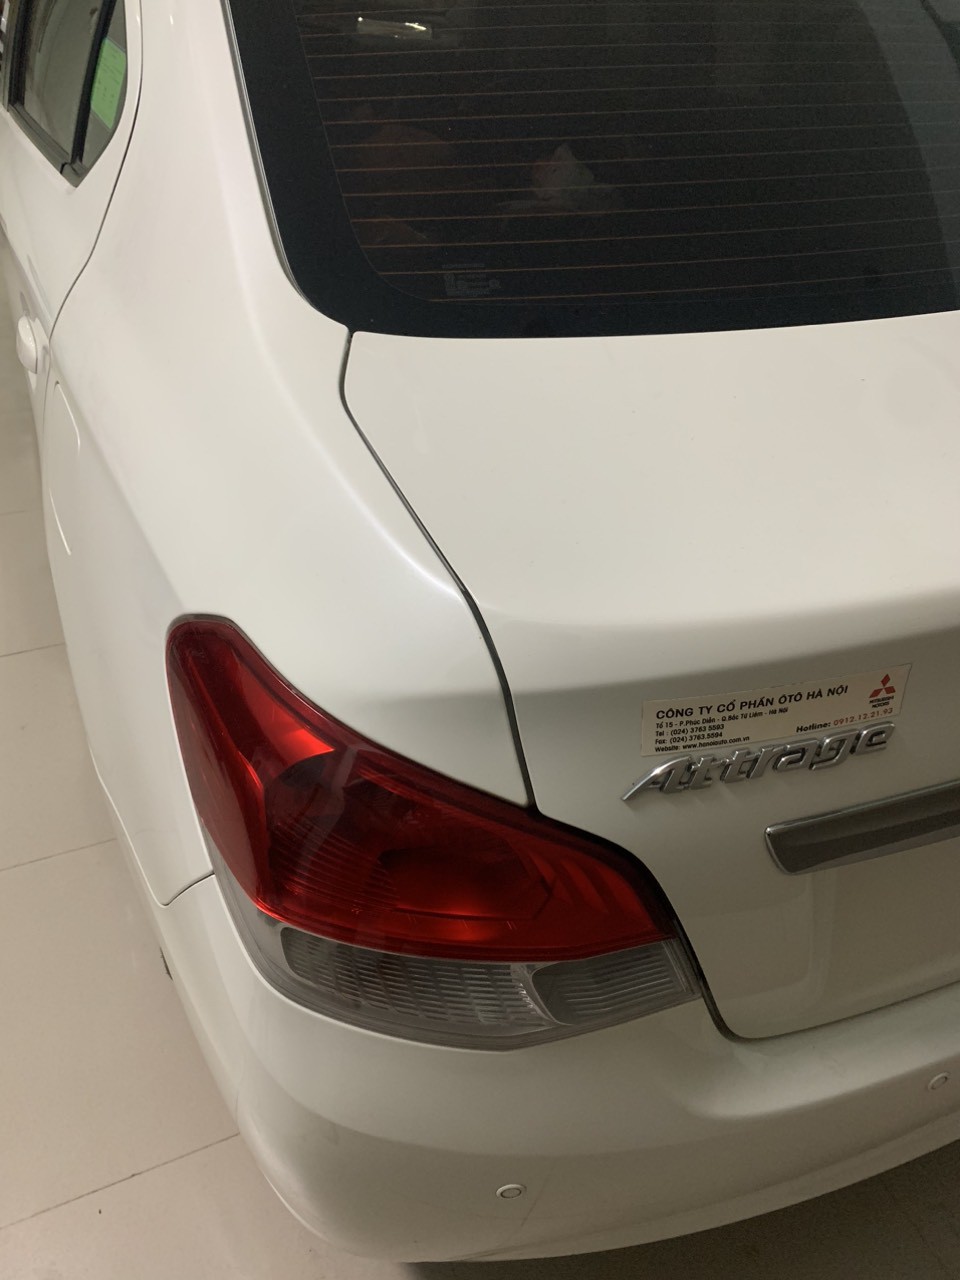 Mitsubishi Attrage 2018 - Bán ô tô Mitsubishi Attrage đời 2018 bản CVT Eco nhập khẩu nguyên chiếc từ Thái Lan; biển số VIP HA NOI.